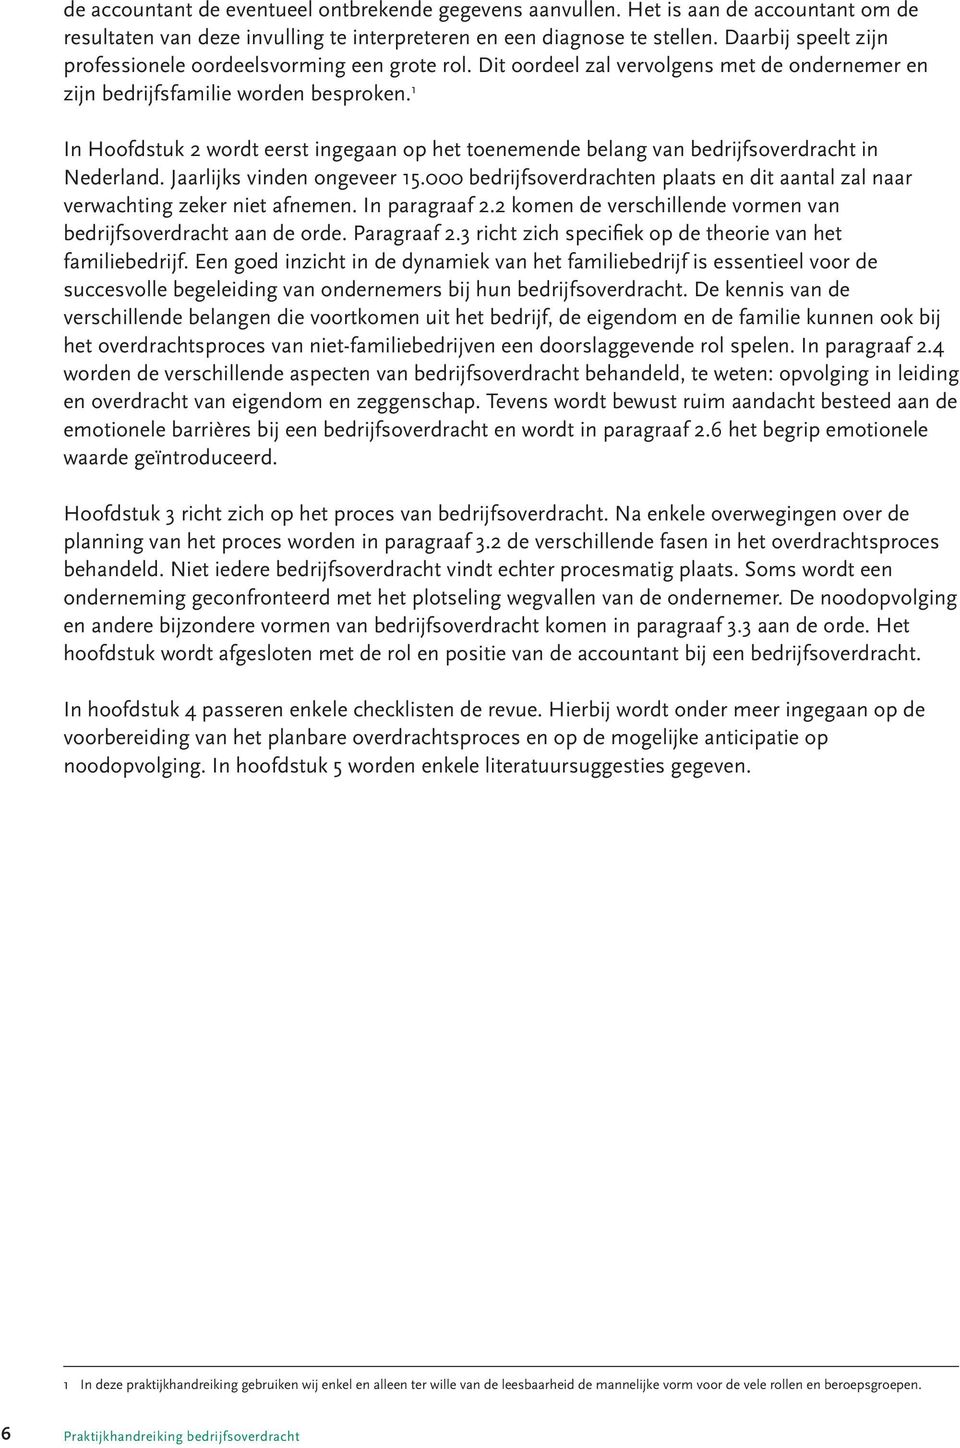 1 In Hoofdstuk 2 wordt eerst ingegaan op het toenemende belang van bedrijfsoverdracht in Nederland. Jaarlijks vinden ongeveer 15.